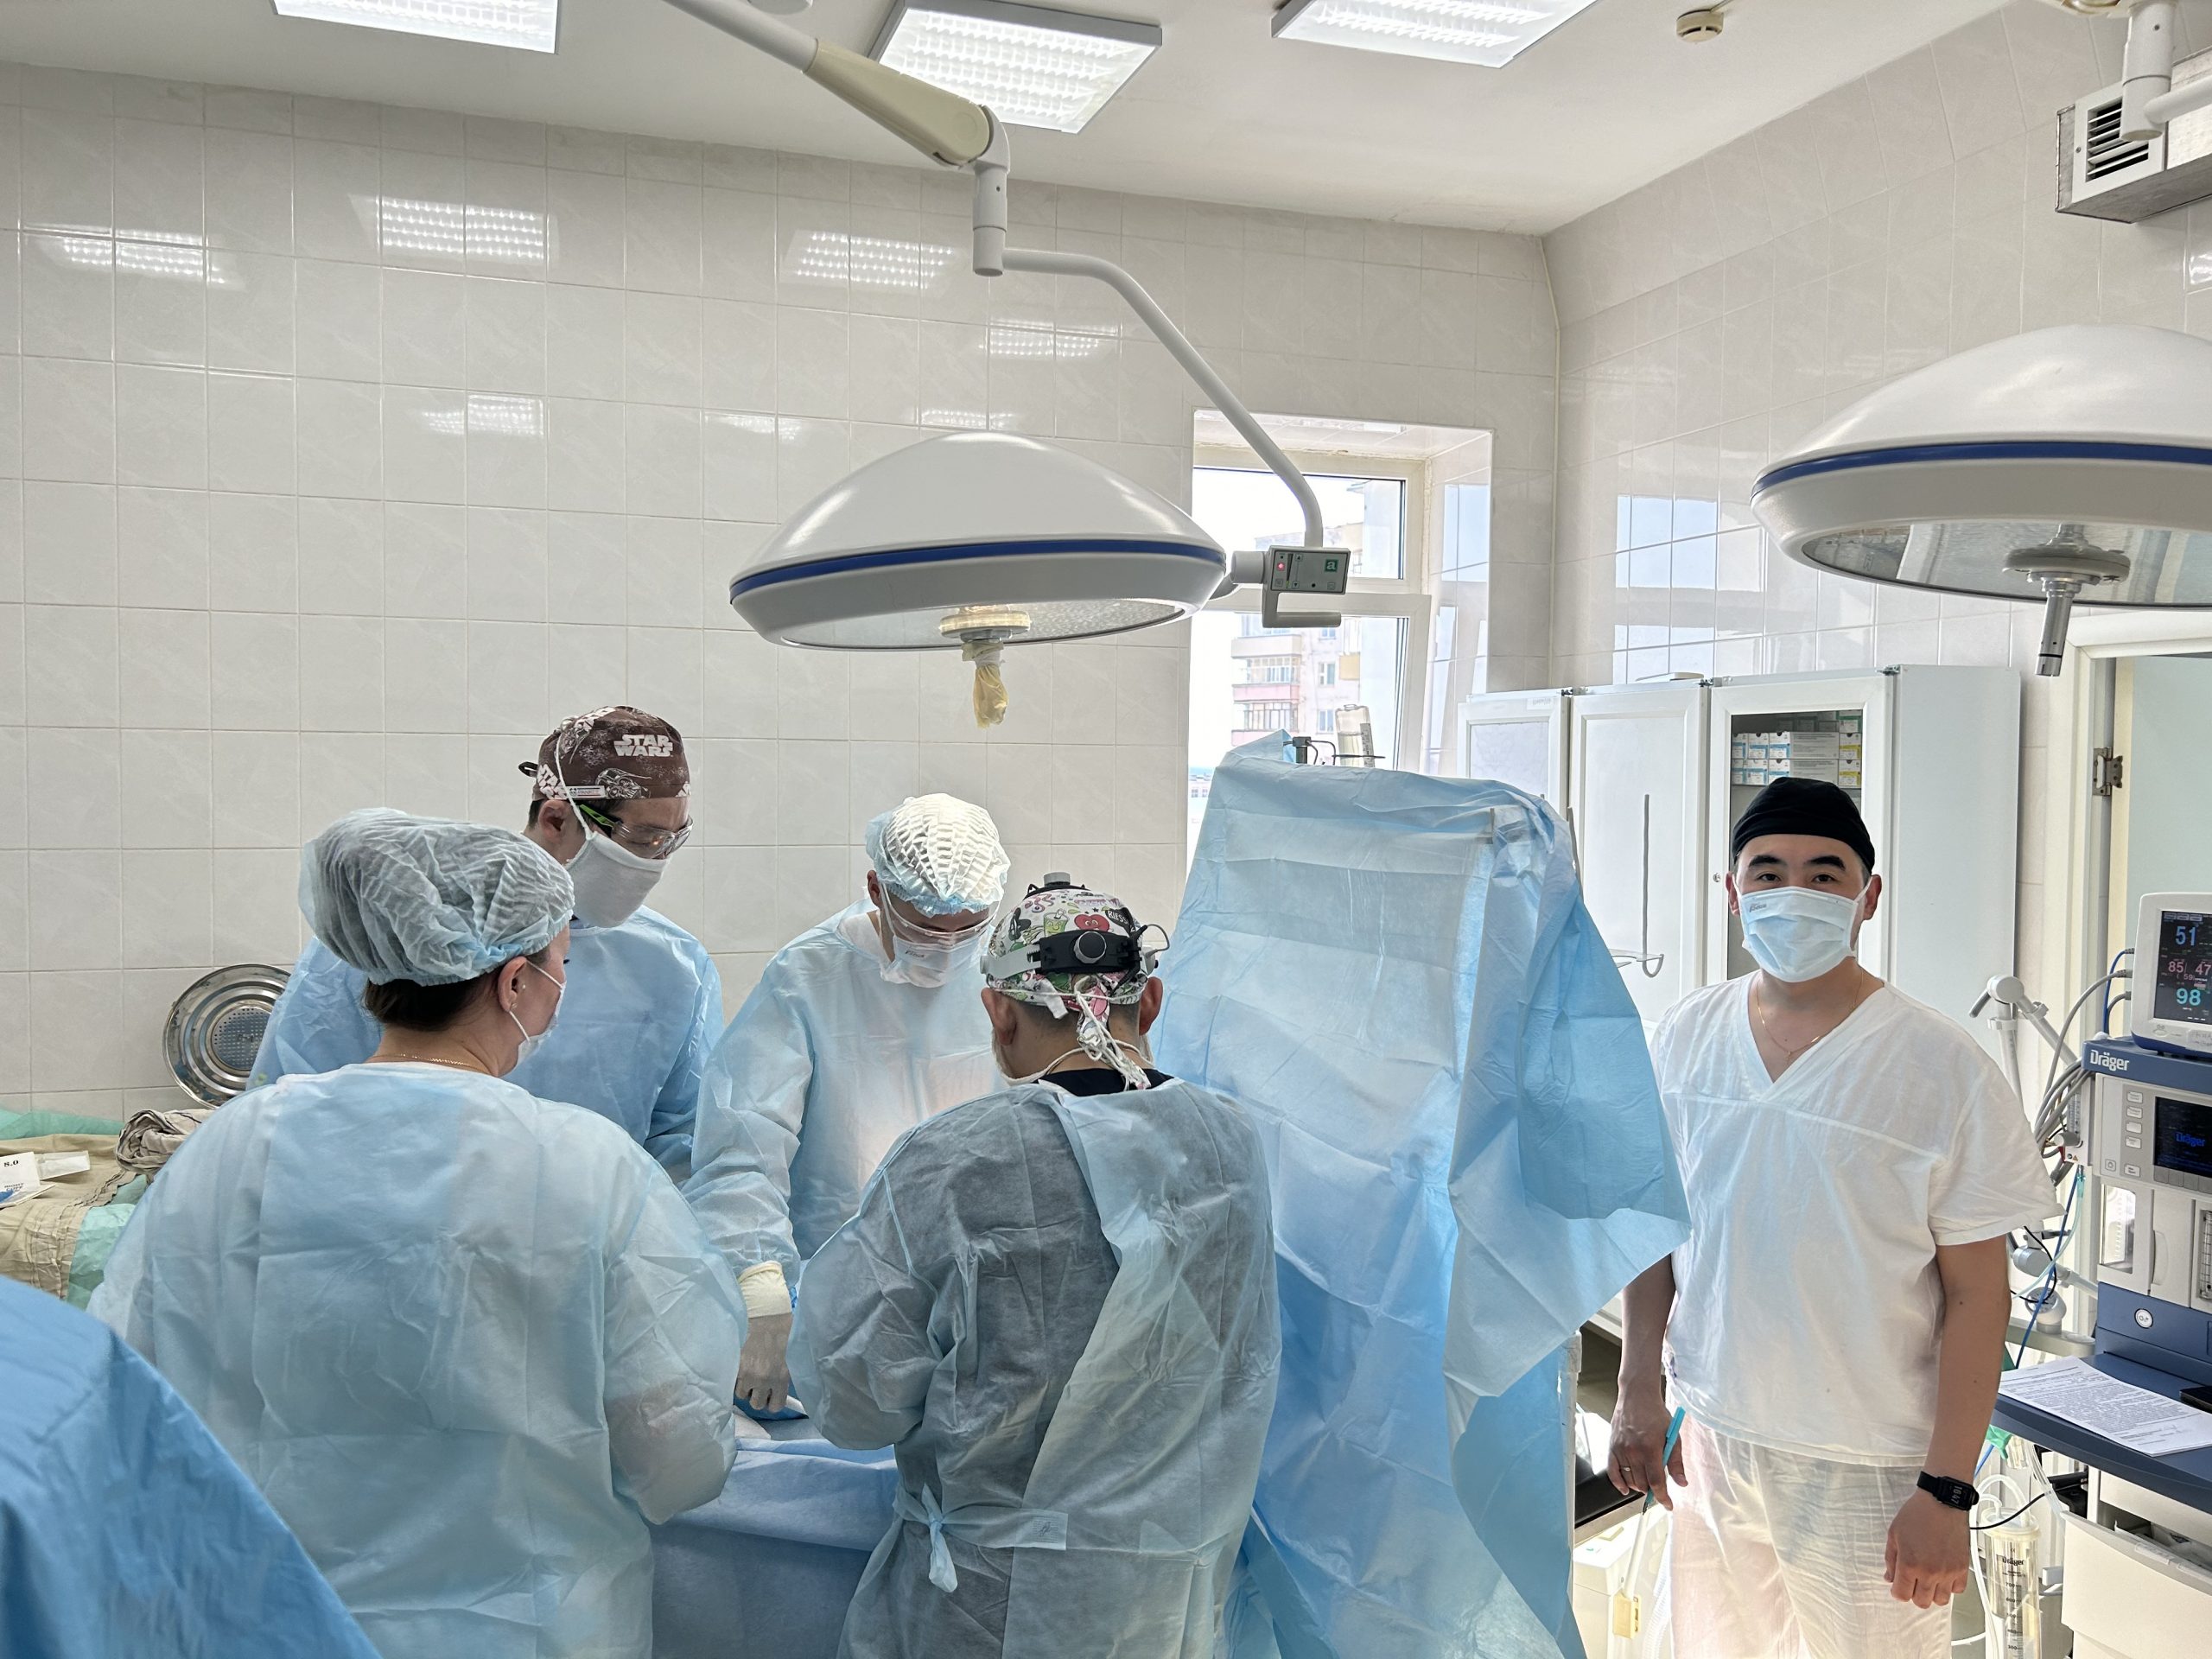 Врачи мобильного хирургического центра провели более 40 операций в трех районах Якутии в апреле